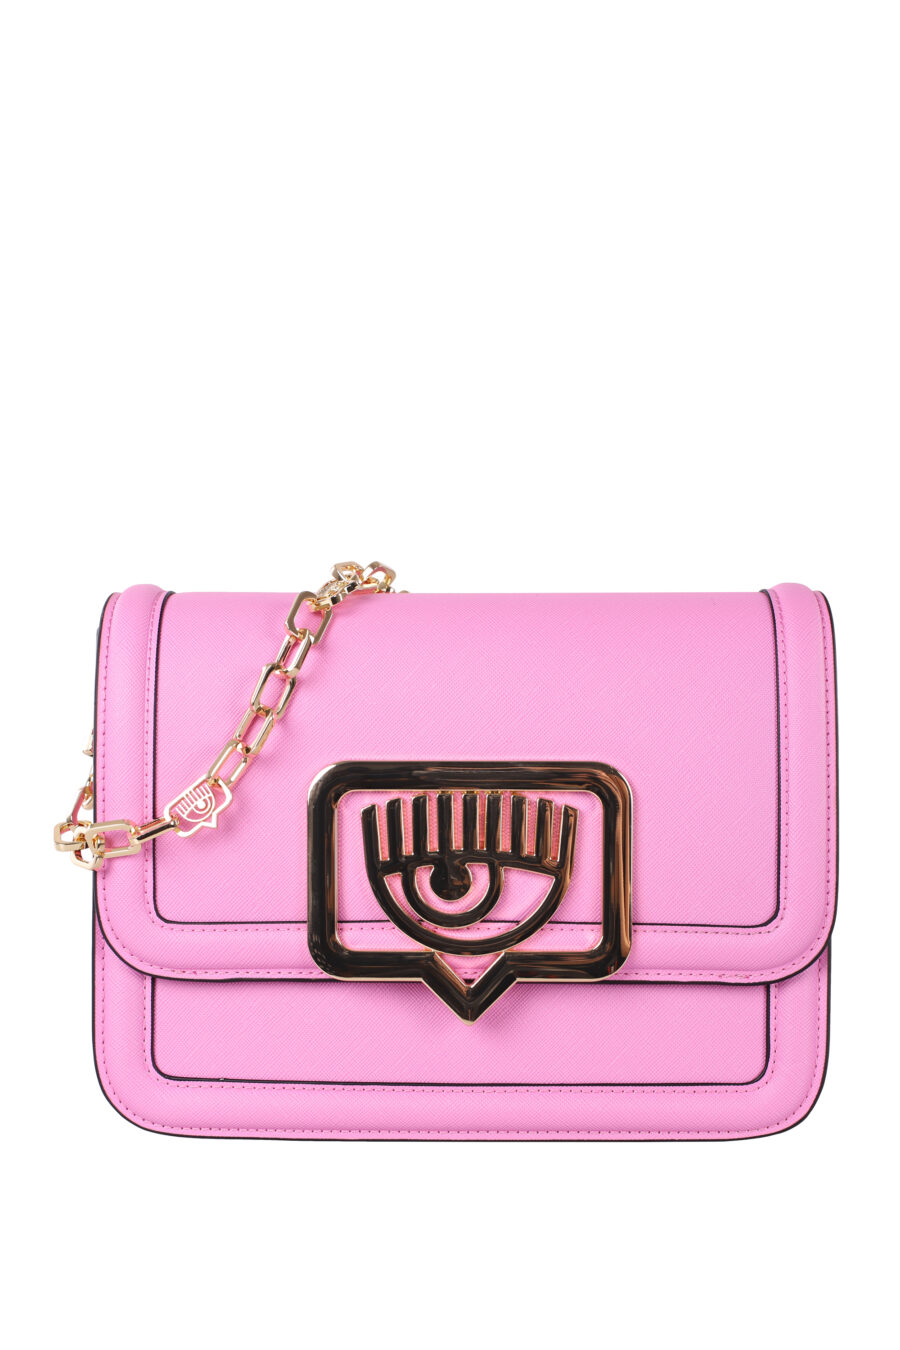 Pink shoulder bag with gold eye logo - IMG 5991